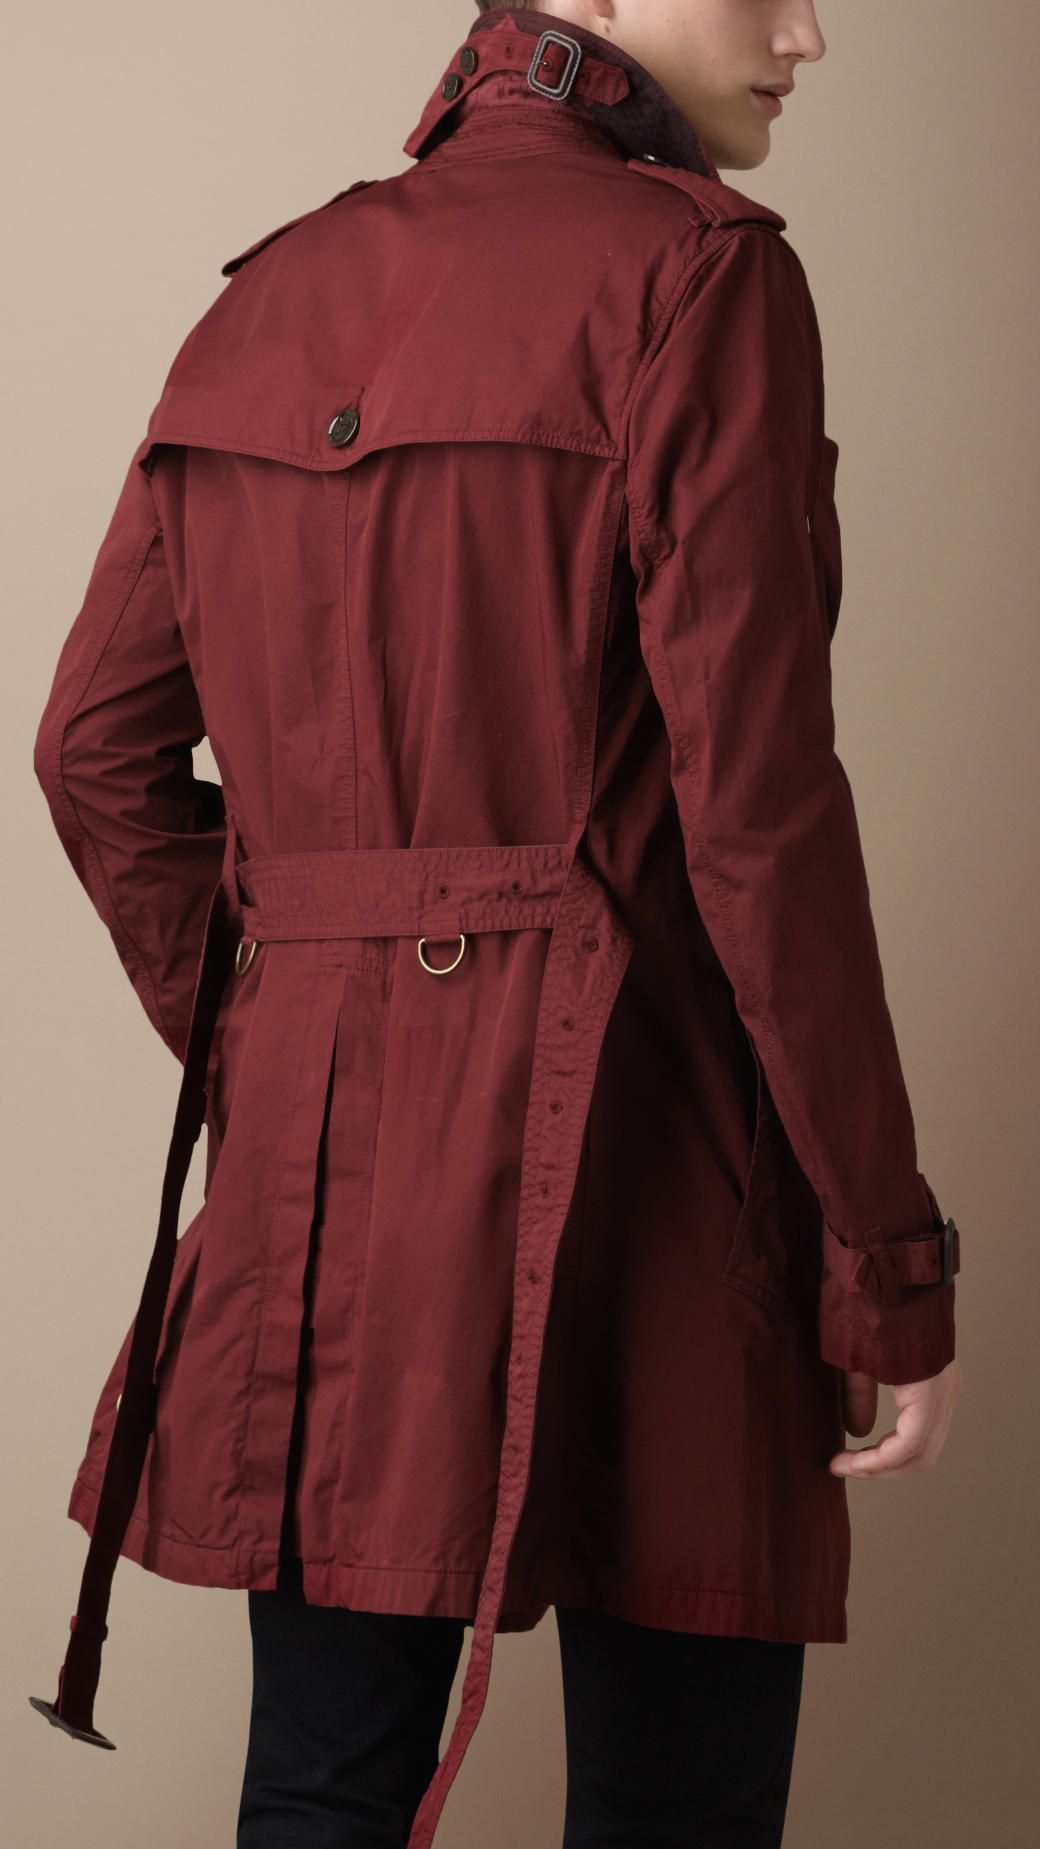 Arriba 79+ imagen burberry trench coat replica - Viaterra.mx